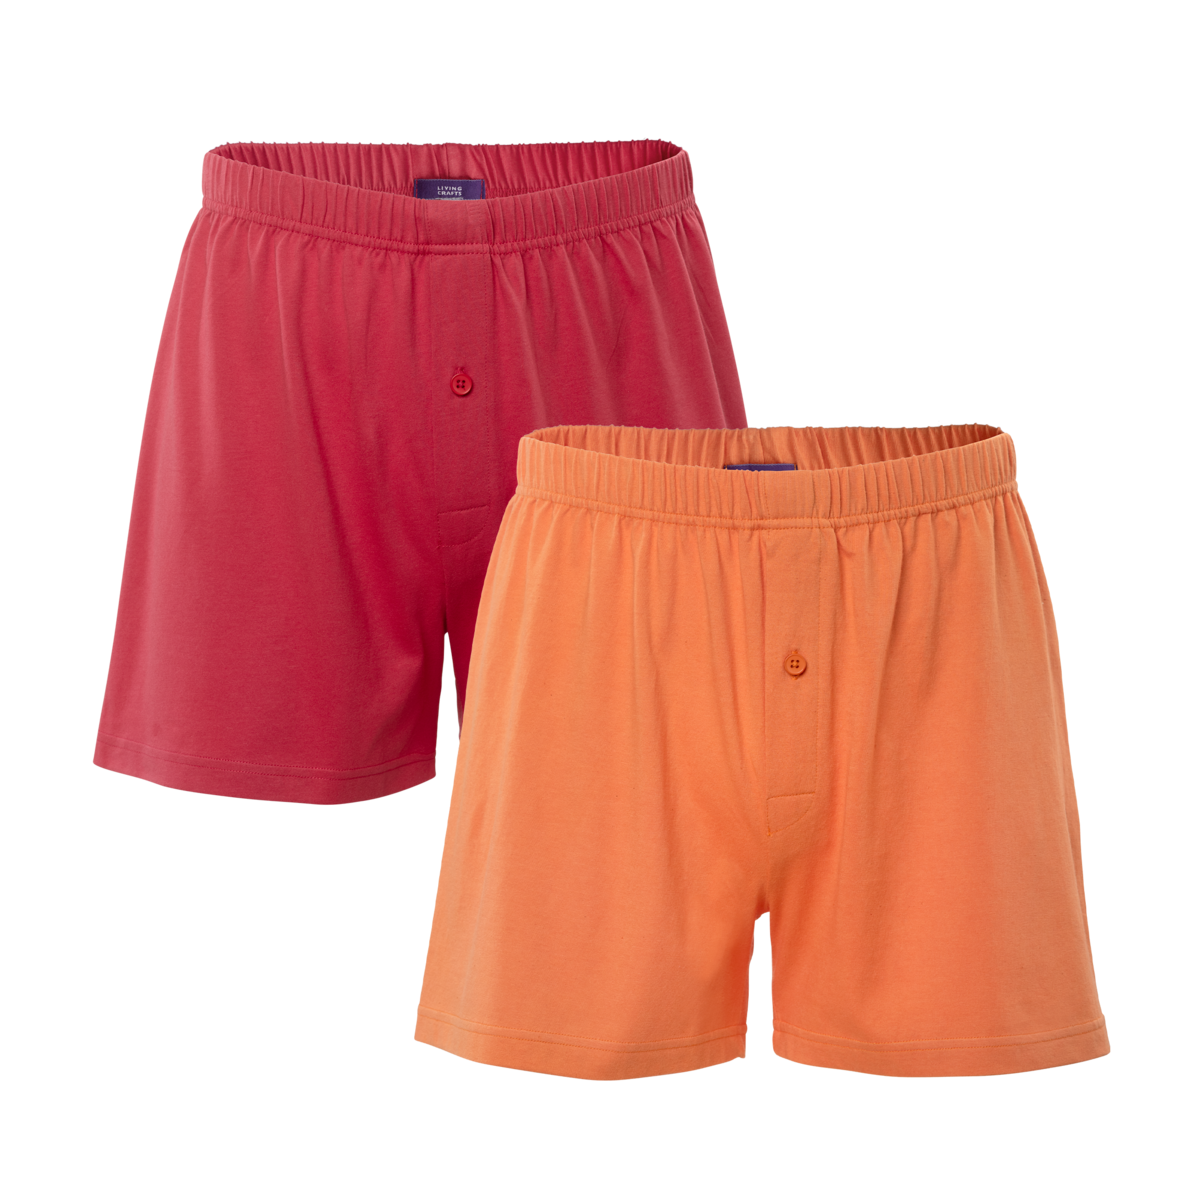 Orange Boxer shorts, pack of 2, BEN